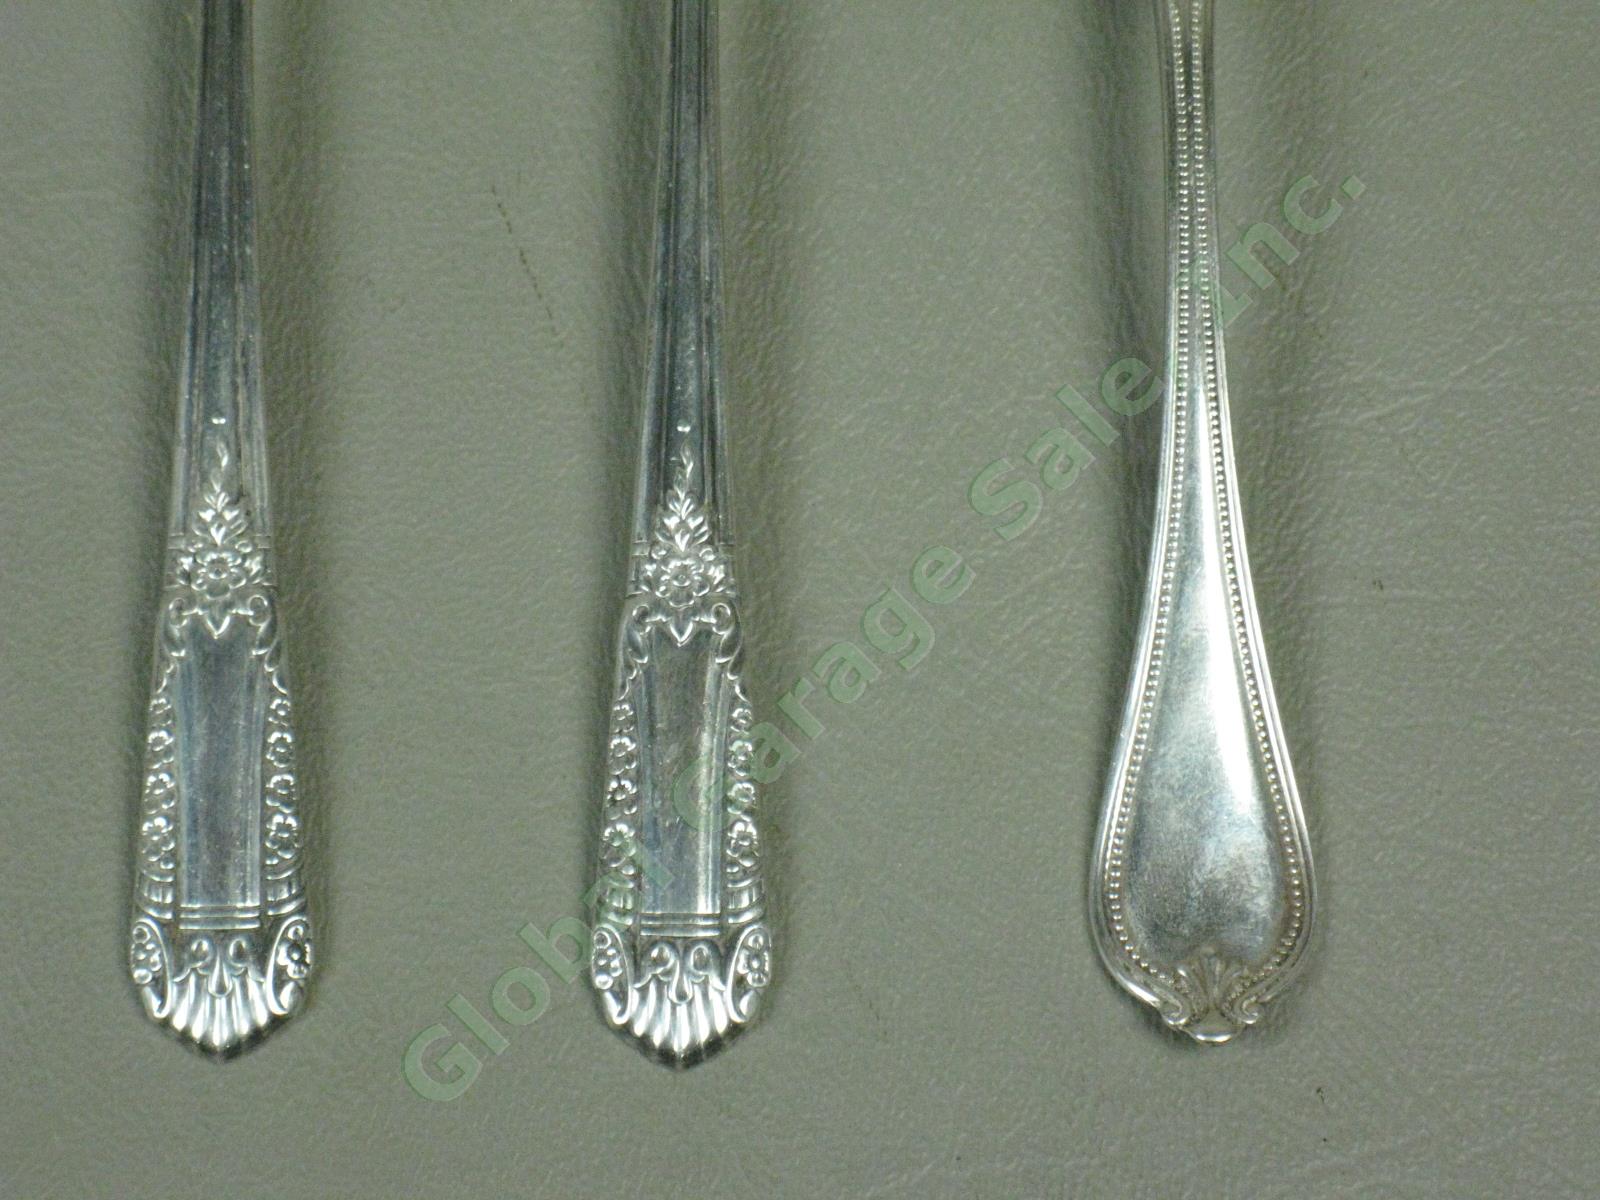 7 State House Inaugural Sterling Silver Teaspoons Spoons Silverware Set 232 Gram 4